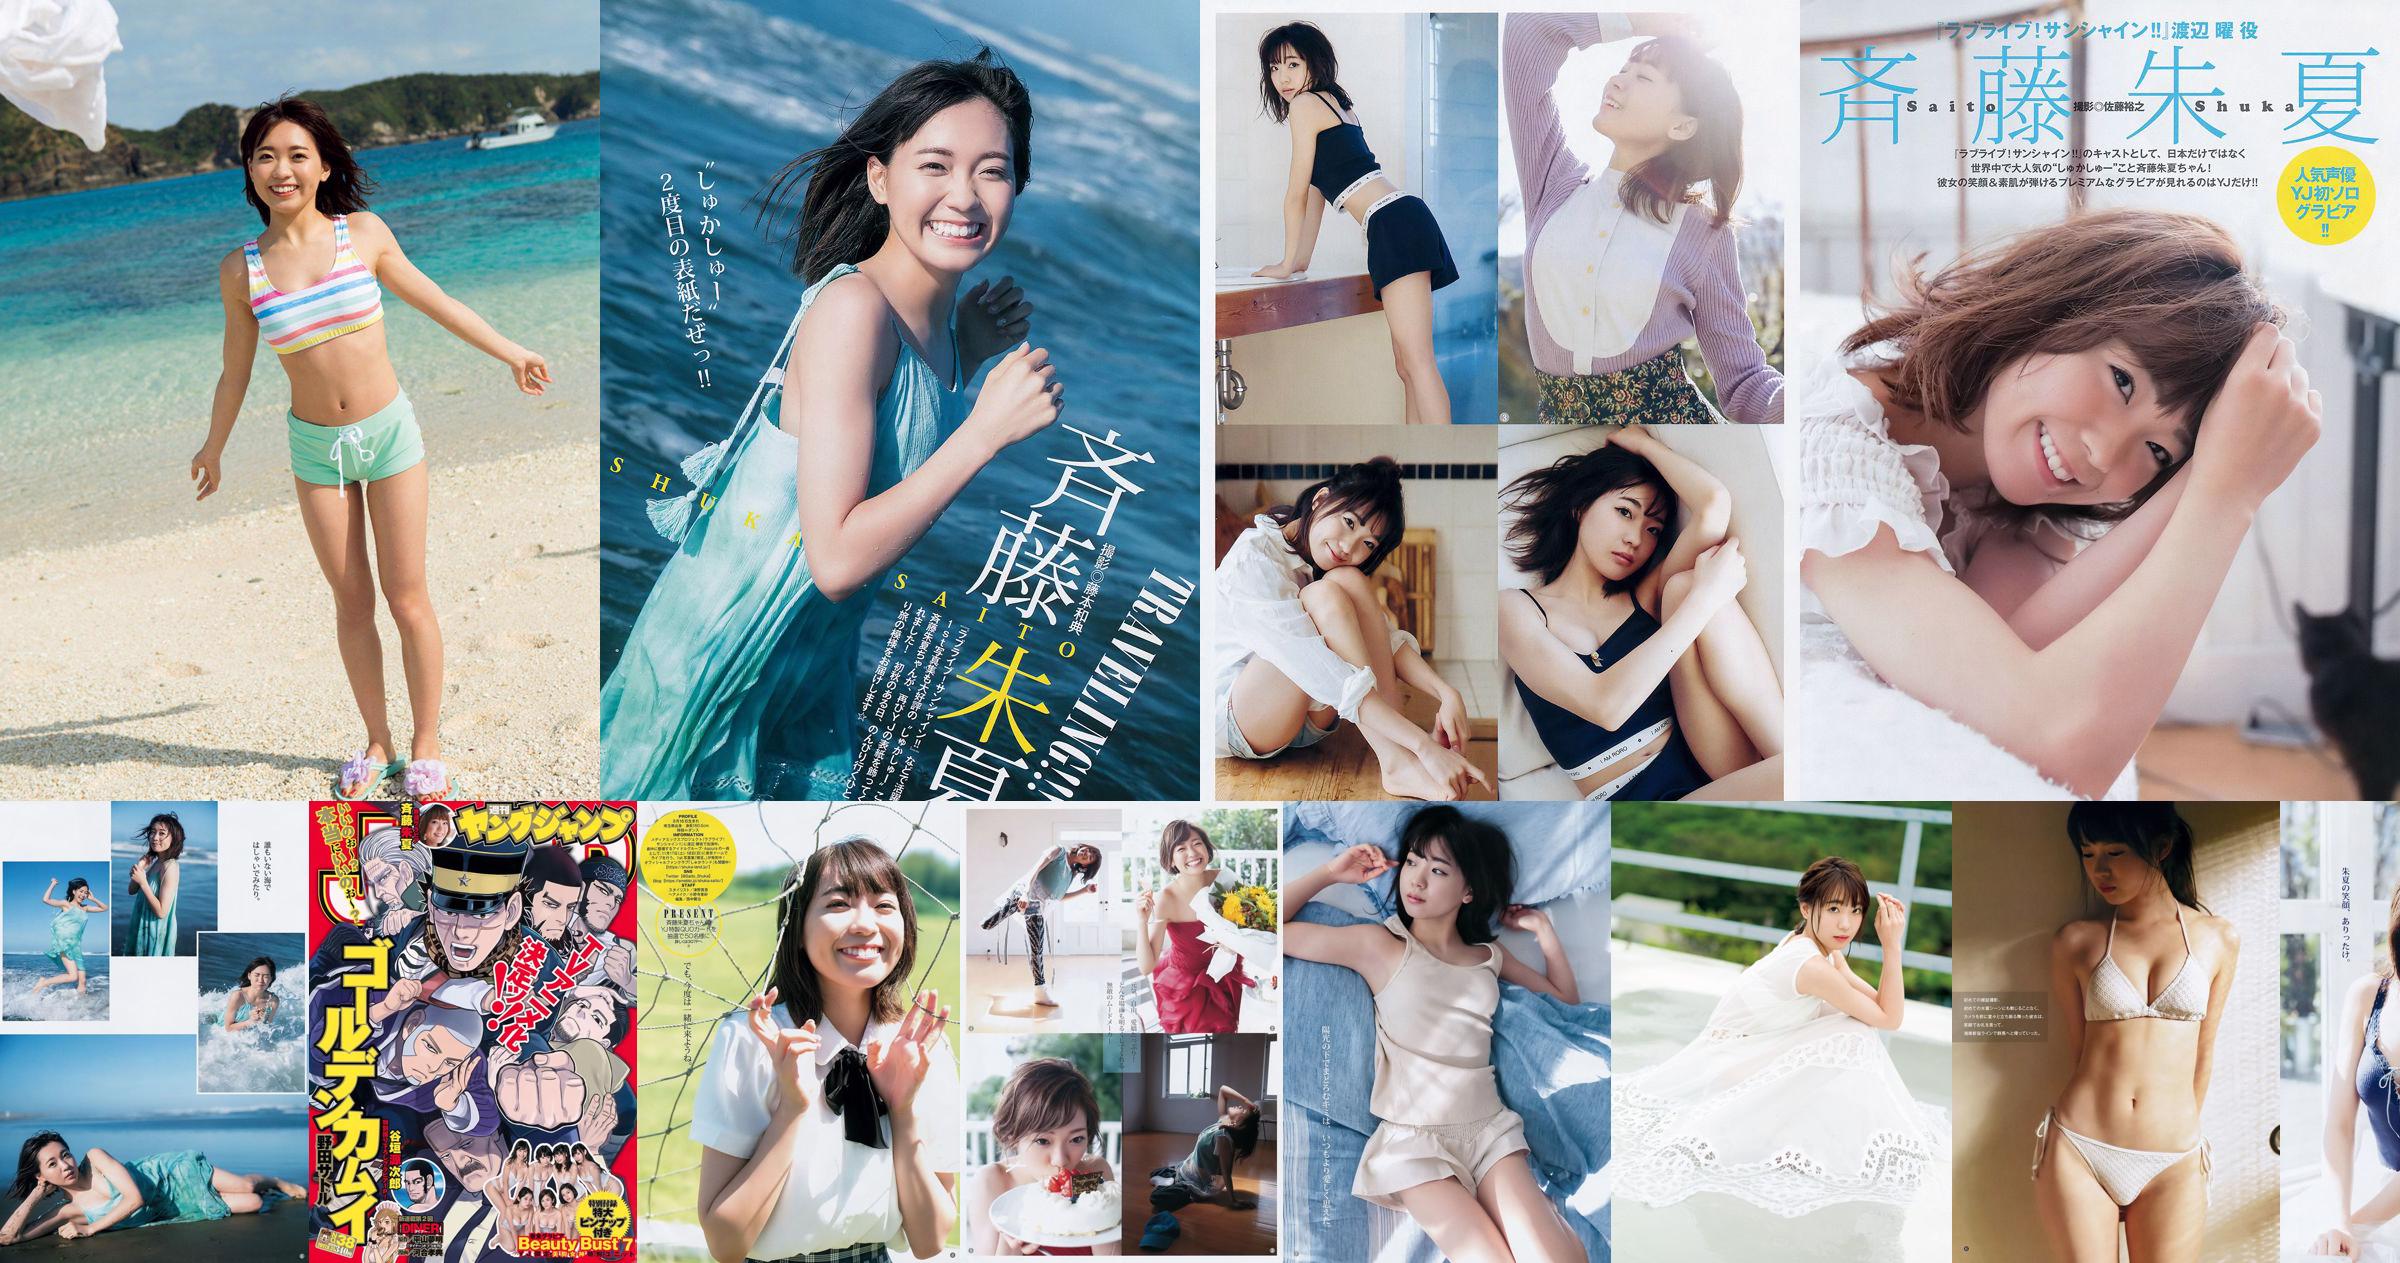 Shuka Saito Beauty Bust 7 [Weekly Young Jump] 2017 № 38 Фото No.2a1672 Страница 2